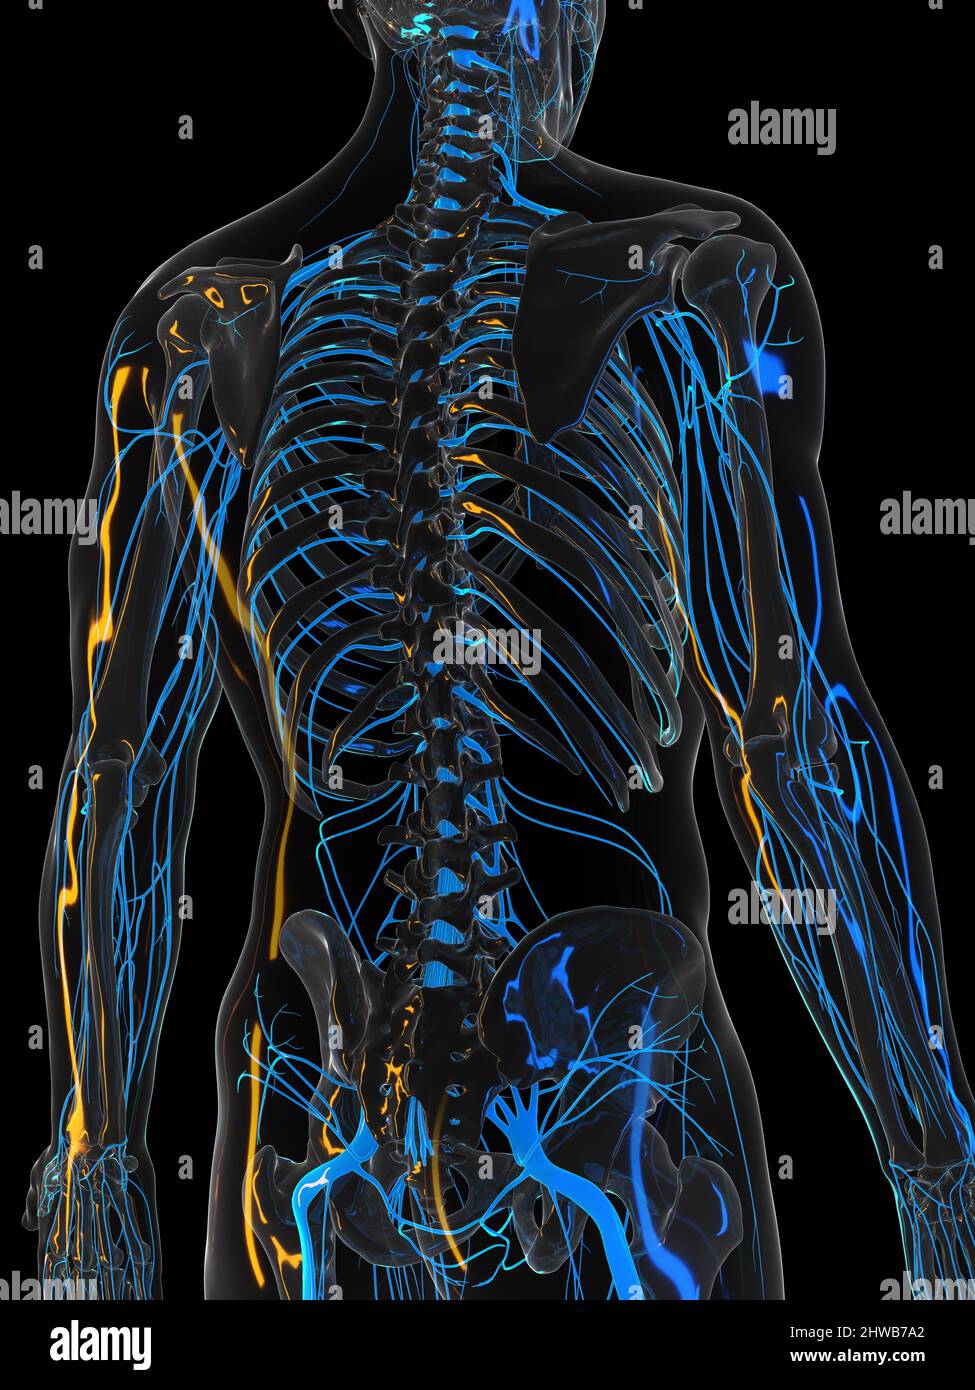 Nervous System Illustration Stock Photo Alamy